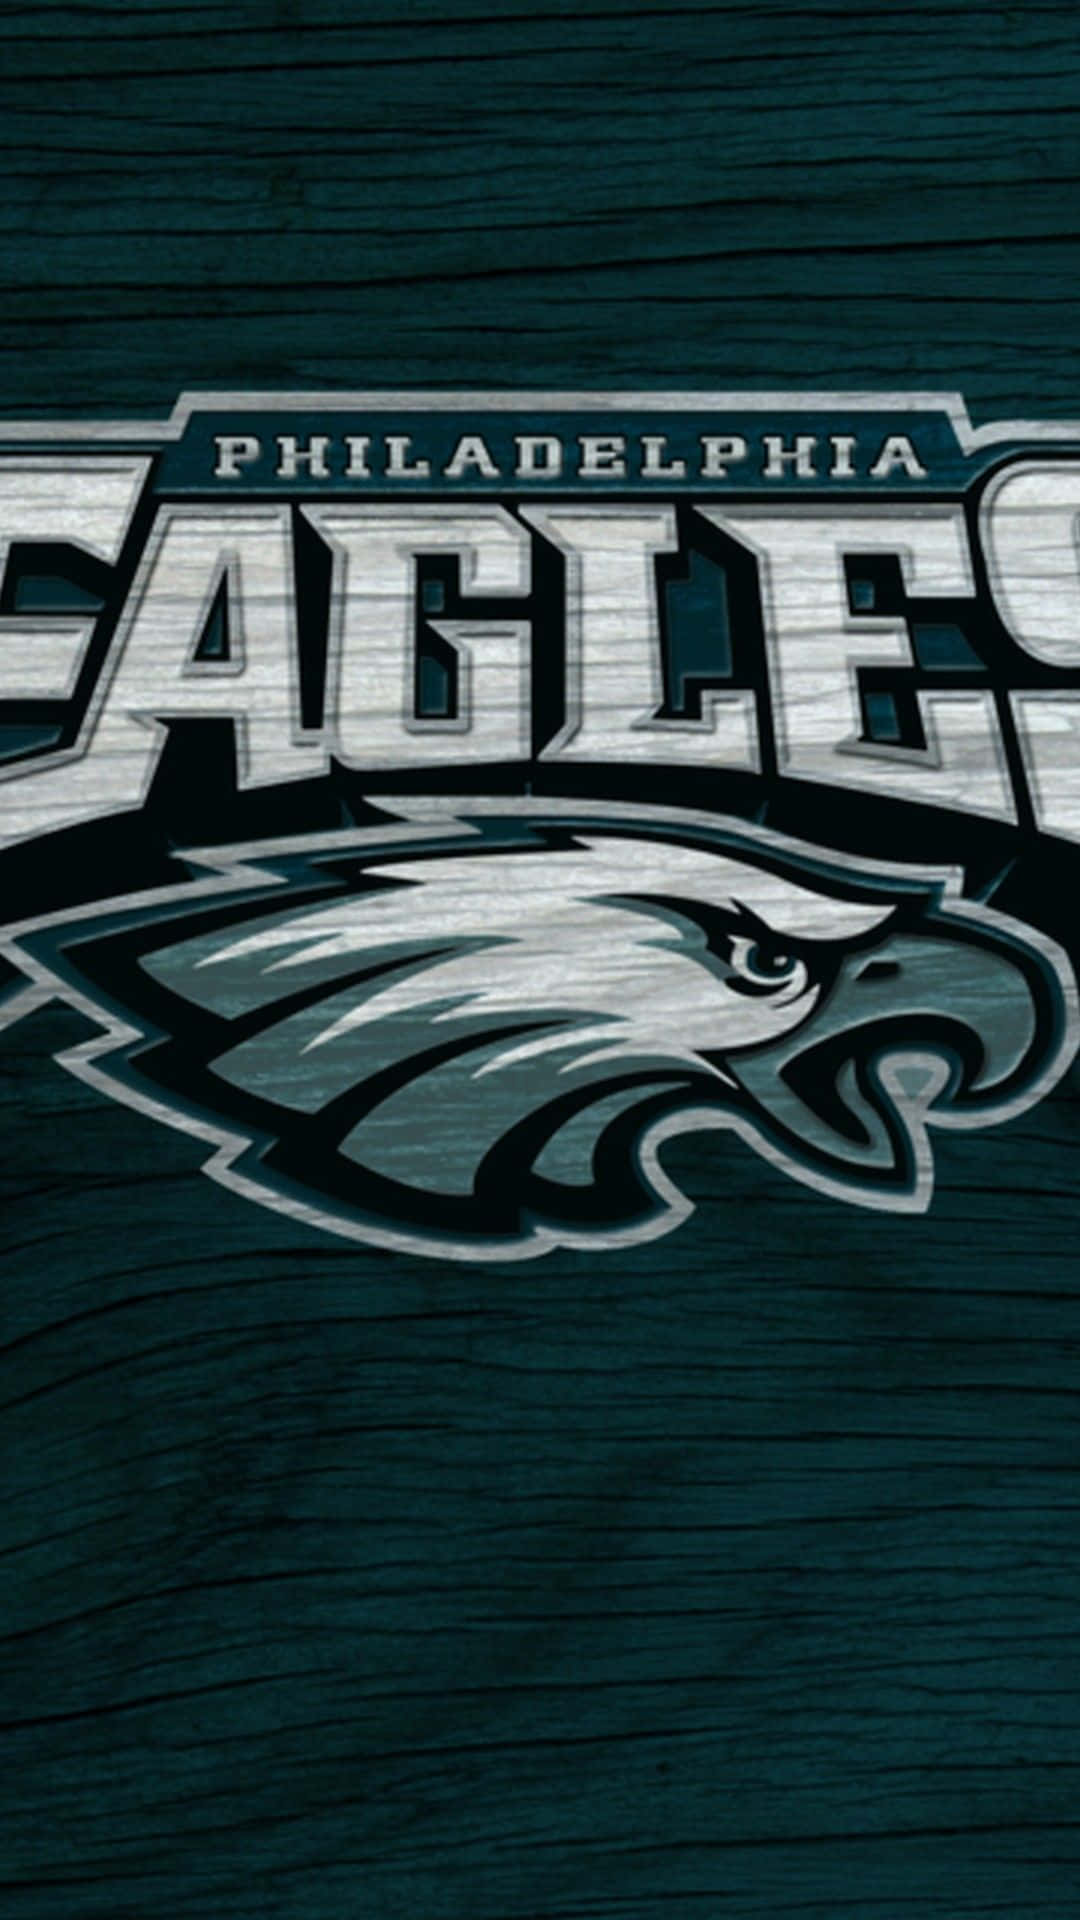 Philadelphia Eagles Iphone Wallpaper là bộ sưu tập những hình nền tuyệt đẹp được thiết kế với chim ưng Philadelphia truyền thống và hùng mạnh. Những tác phẩm nghệ thuật này sẽ giúp bạn trang trí điện thoại của mình một cách độc đáo và đầy gu thẩm mỹ. 